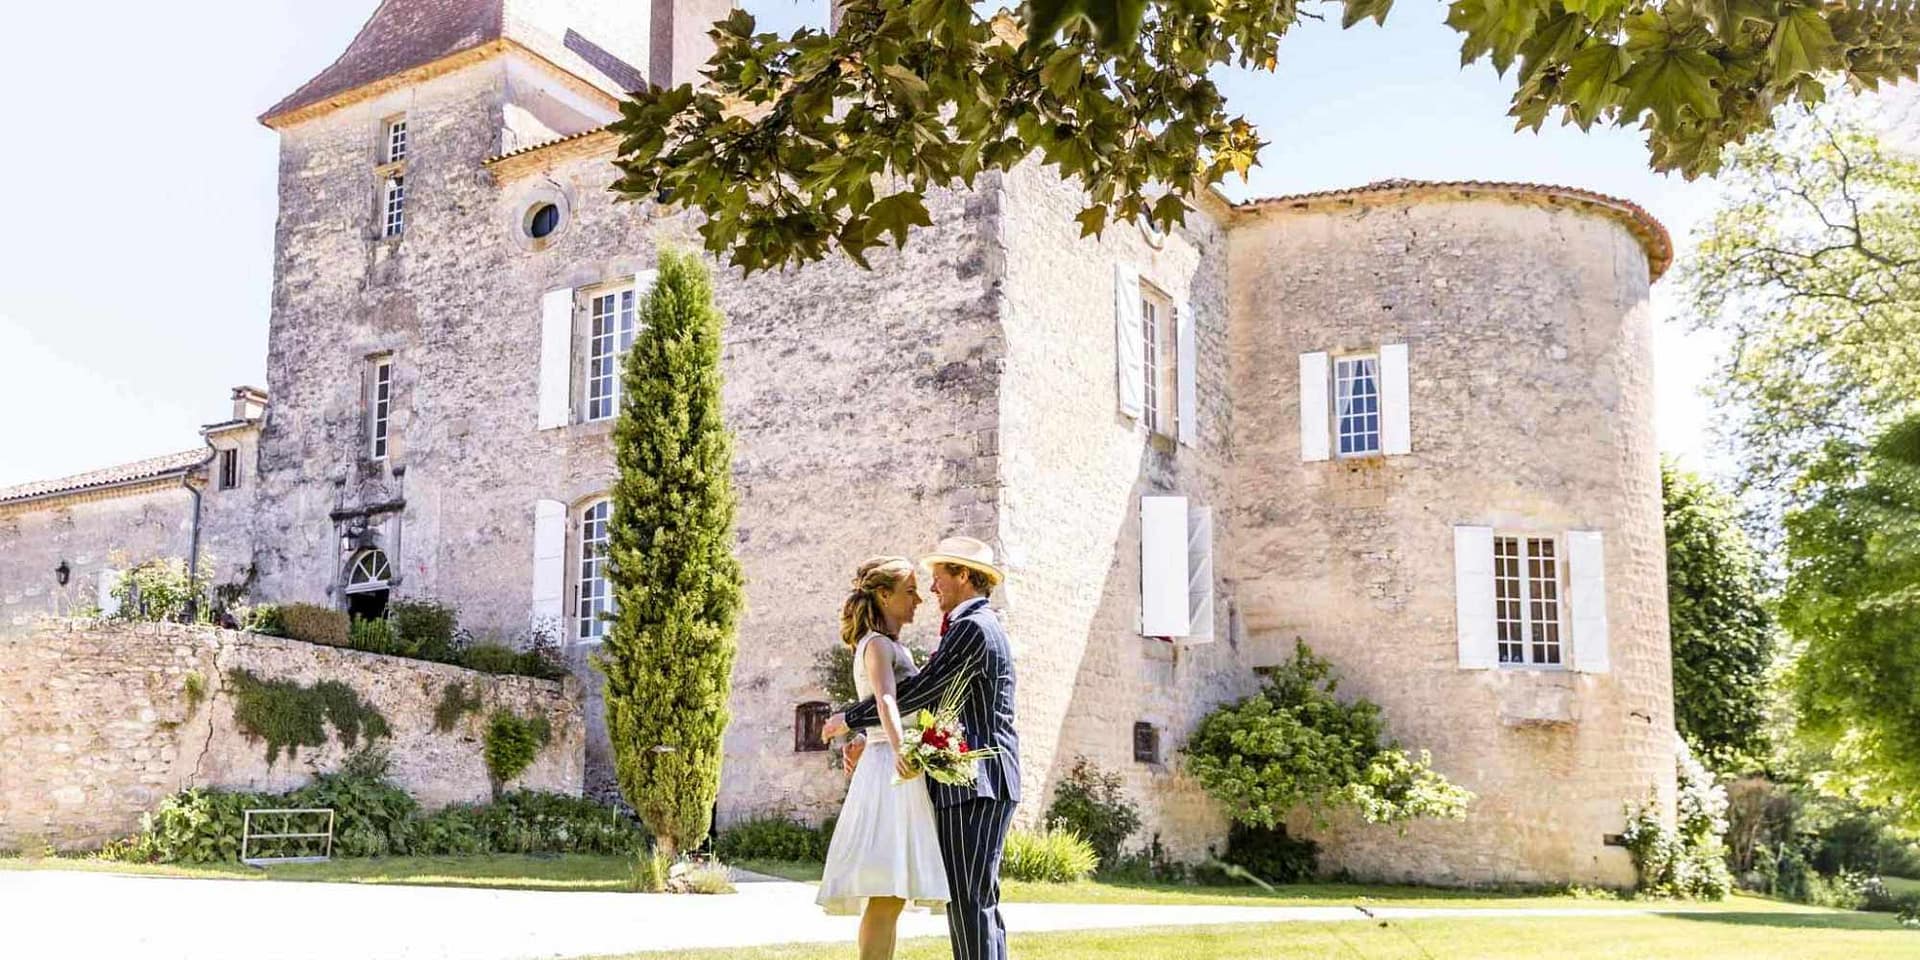 Chateau-barayre-wedding-venue-france